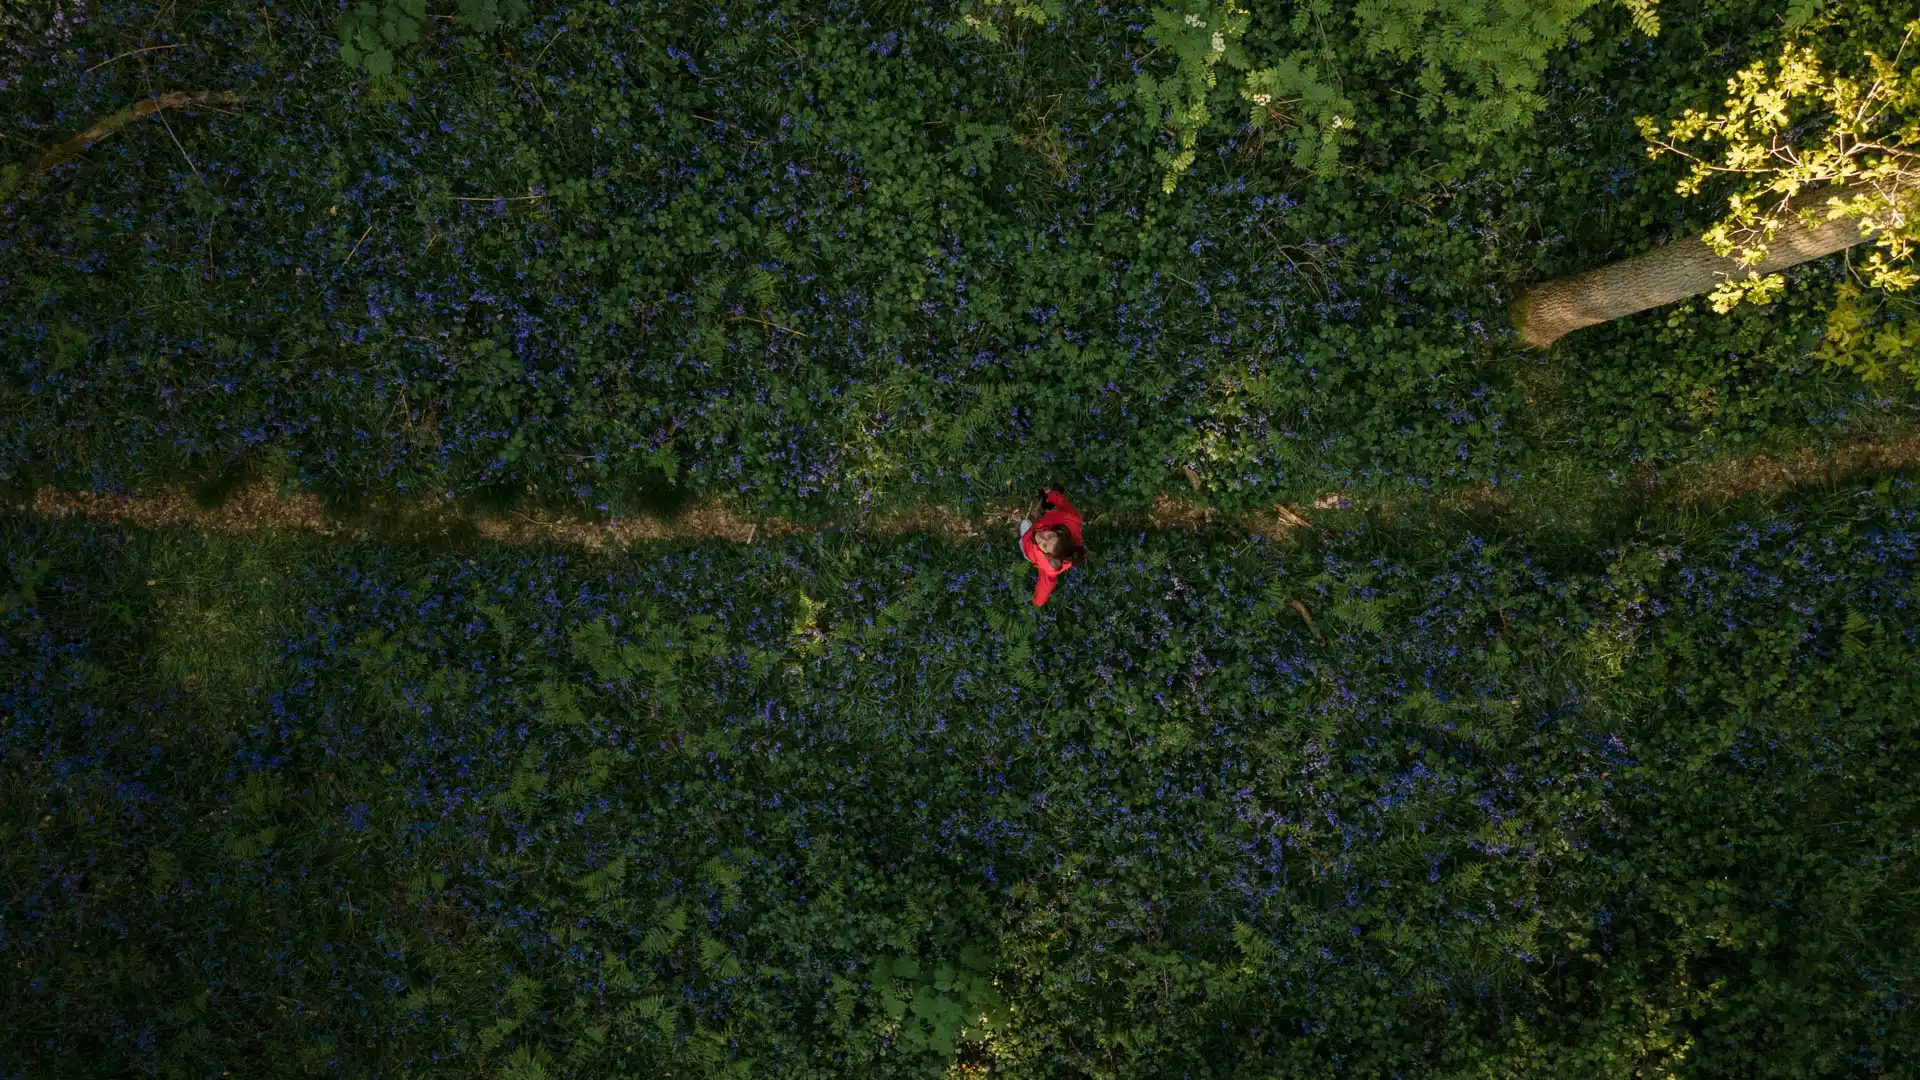 Vue drone d'une personne avec une veste rouge marchant sur un sentier entre les jacinthes sauvages en fleurs dans la Forêt de Soignes